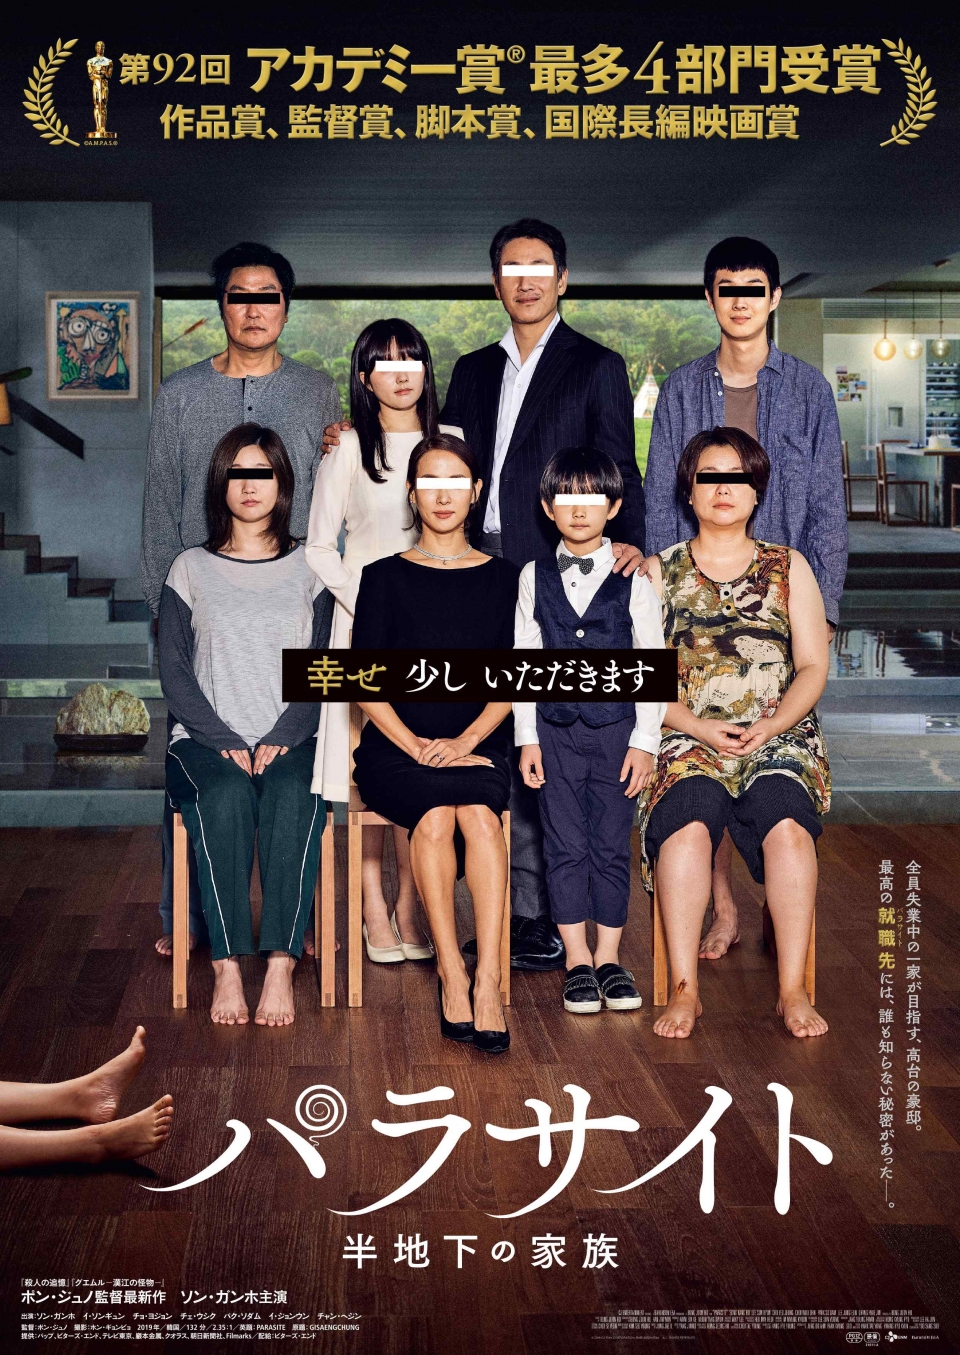 지난 주말 영화 ‘기생충’이 일본 박스오피스에서 1위를 차지했다. (이미지: 영화 ‘기생충’ 일본 트위터 공식 계정)